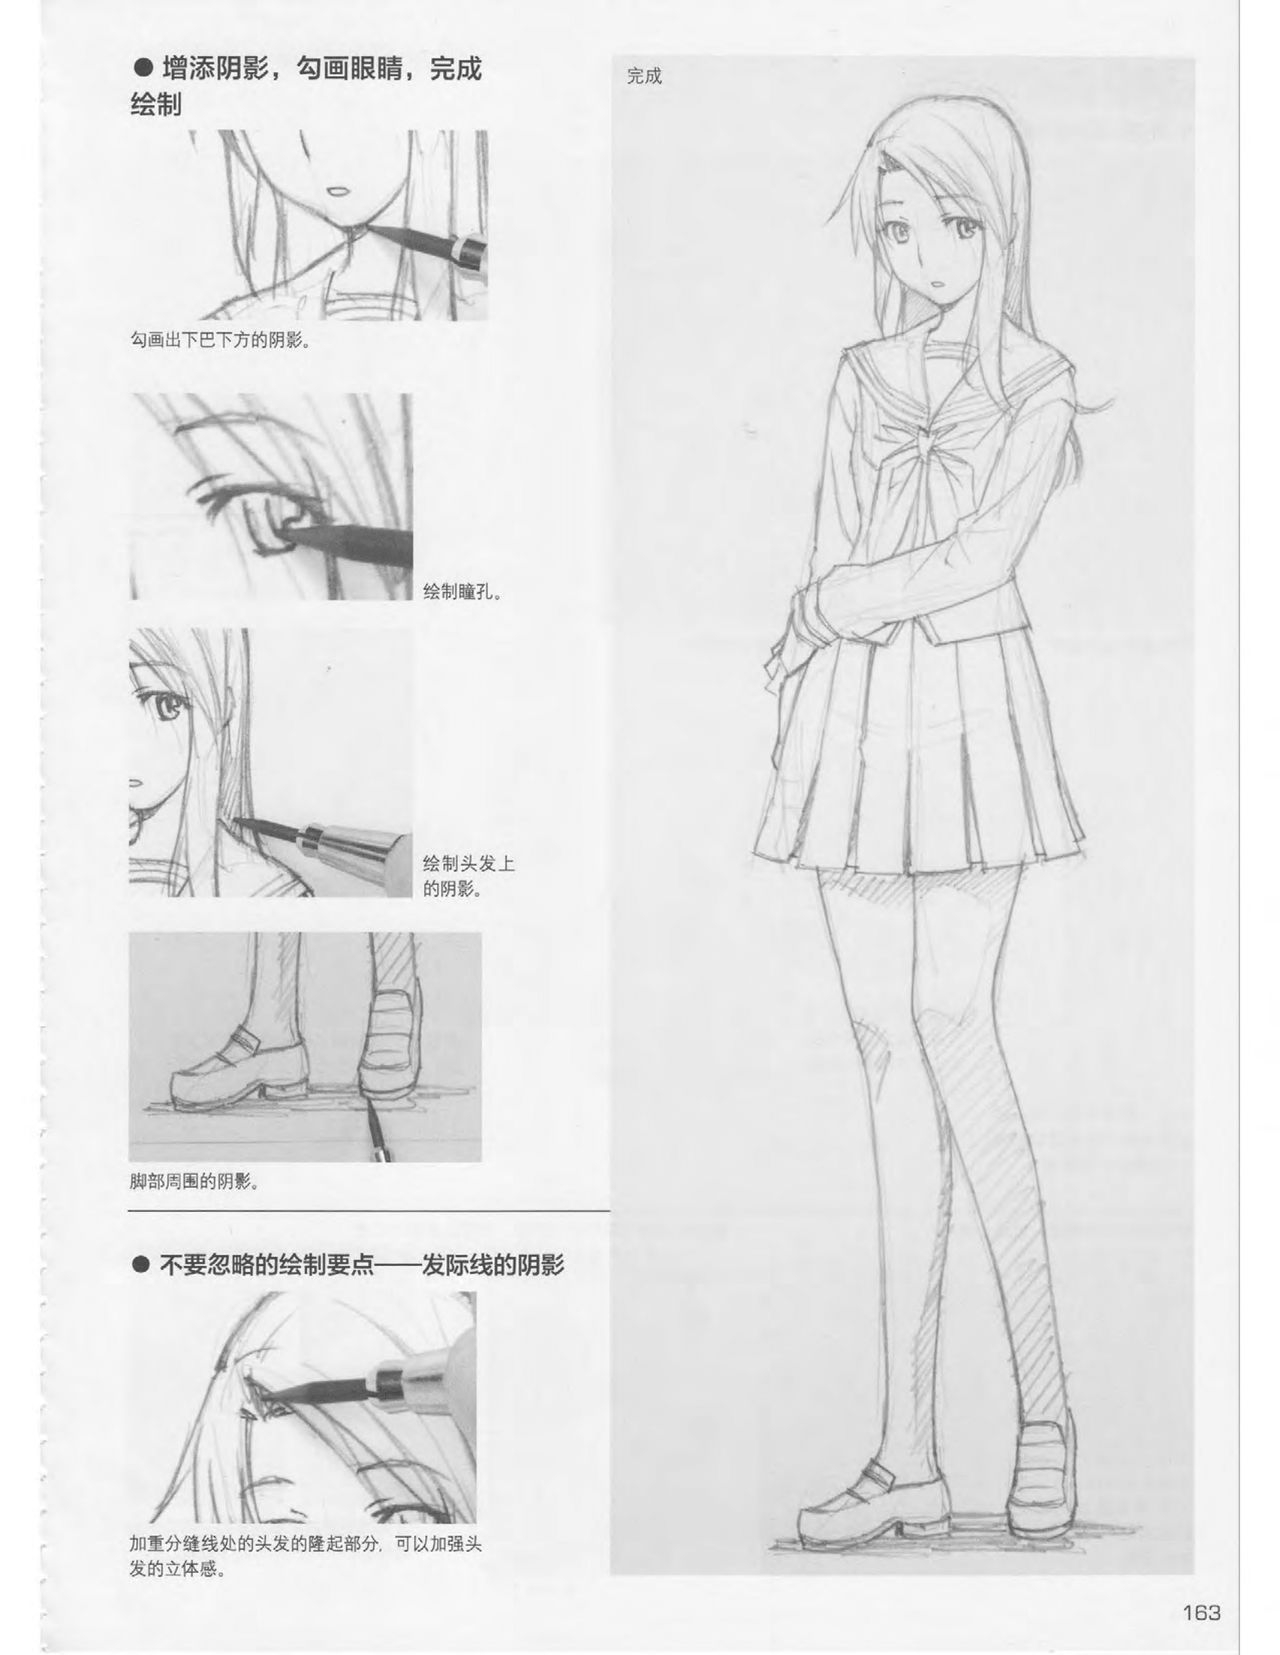 Japanese Manga Master Lecture 3: Lin Akira and Kakumaru Maru Talk About Glamorous Character Modeling 162